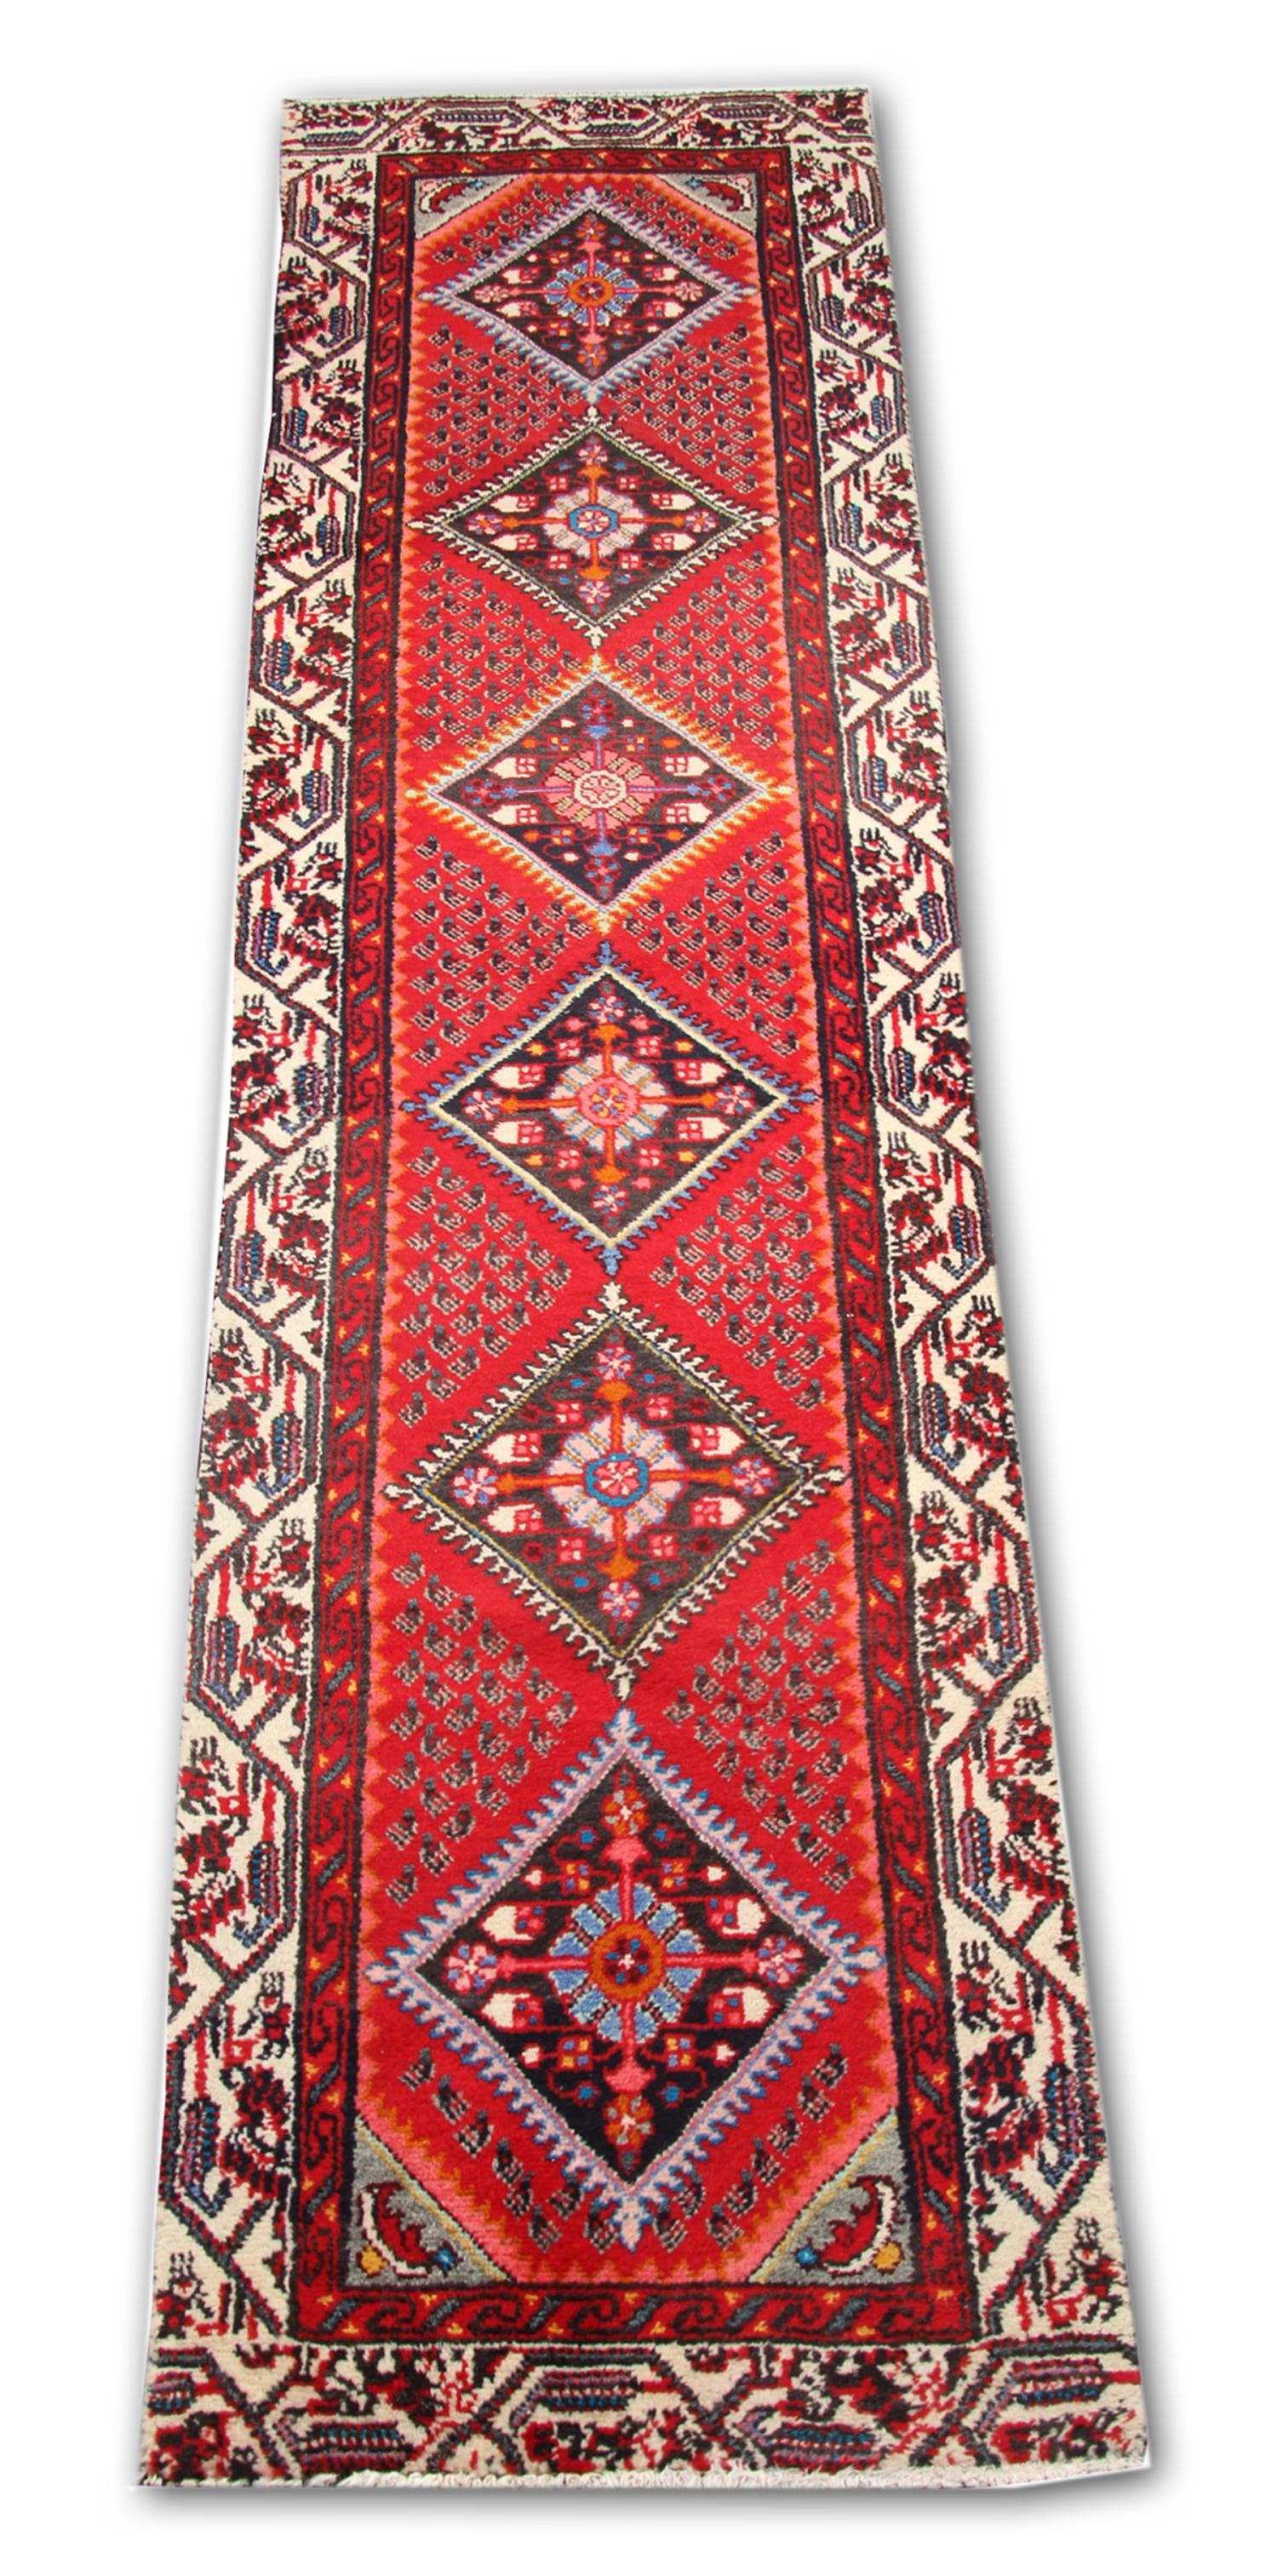 Ce tapis vintage a été fabriqué à la main avec des matériaux organiques de qualité. Tissé avec un design et une palette de couleurs traditionnels. Il se caractérise par un riche fond rouge, un médaillon très décoratif au centre et une bordure à